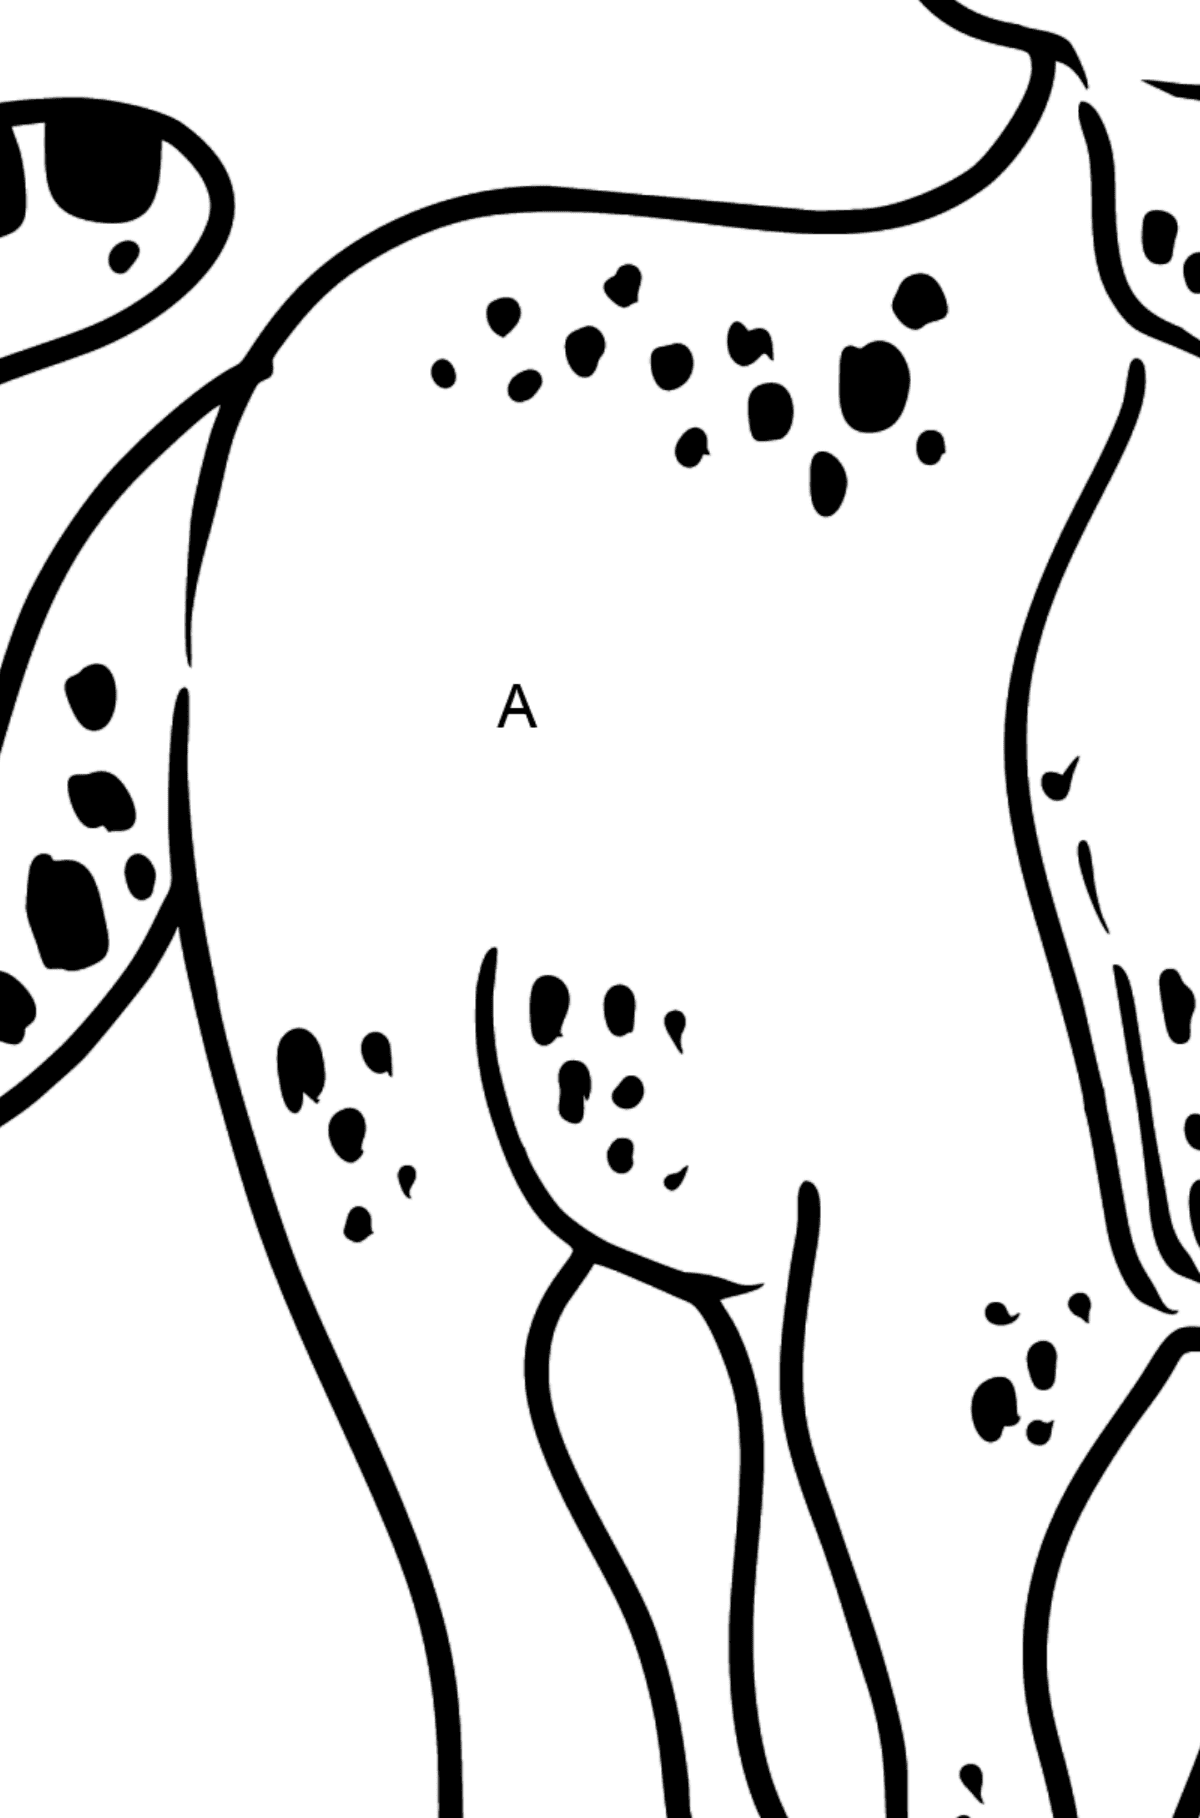 Dibujo de leopardo para colorear - Colorear por Letras para Niños